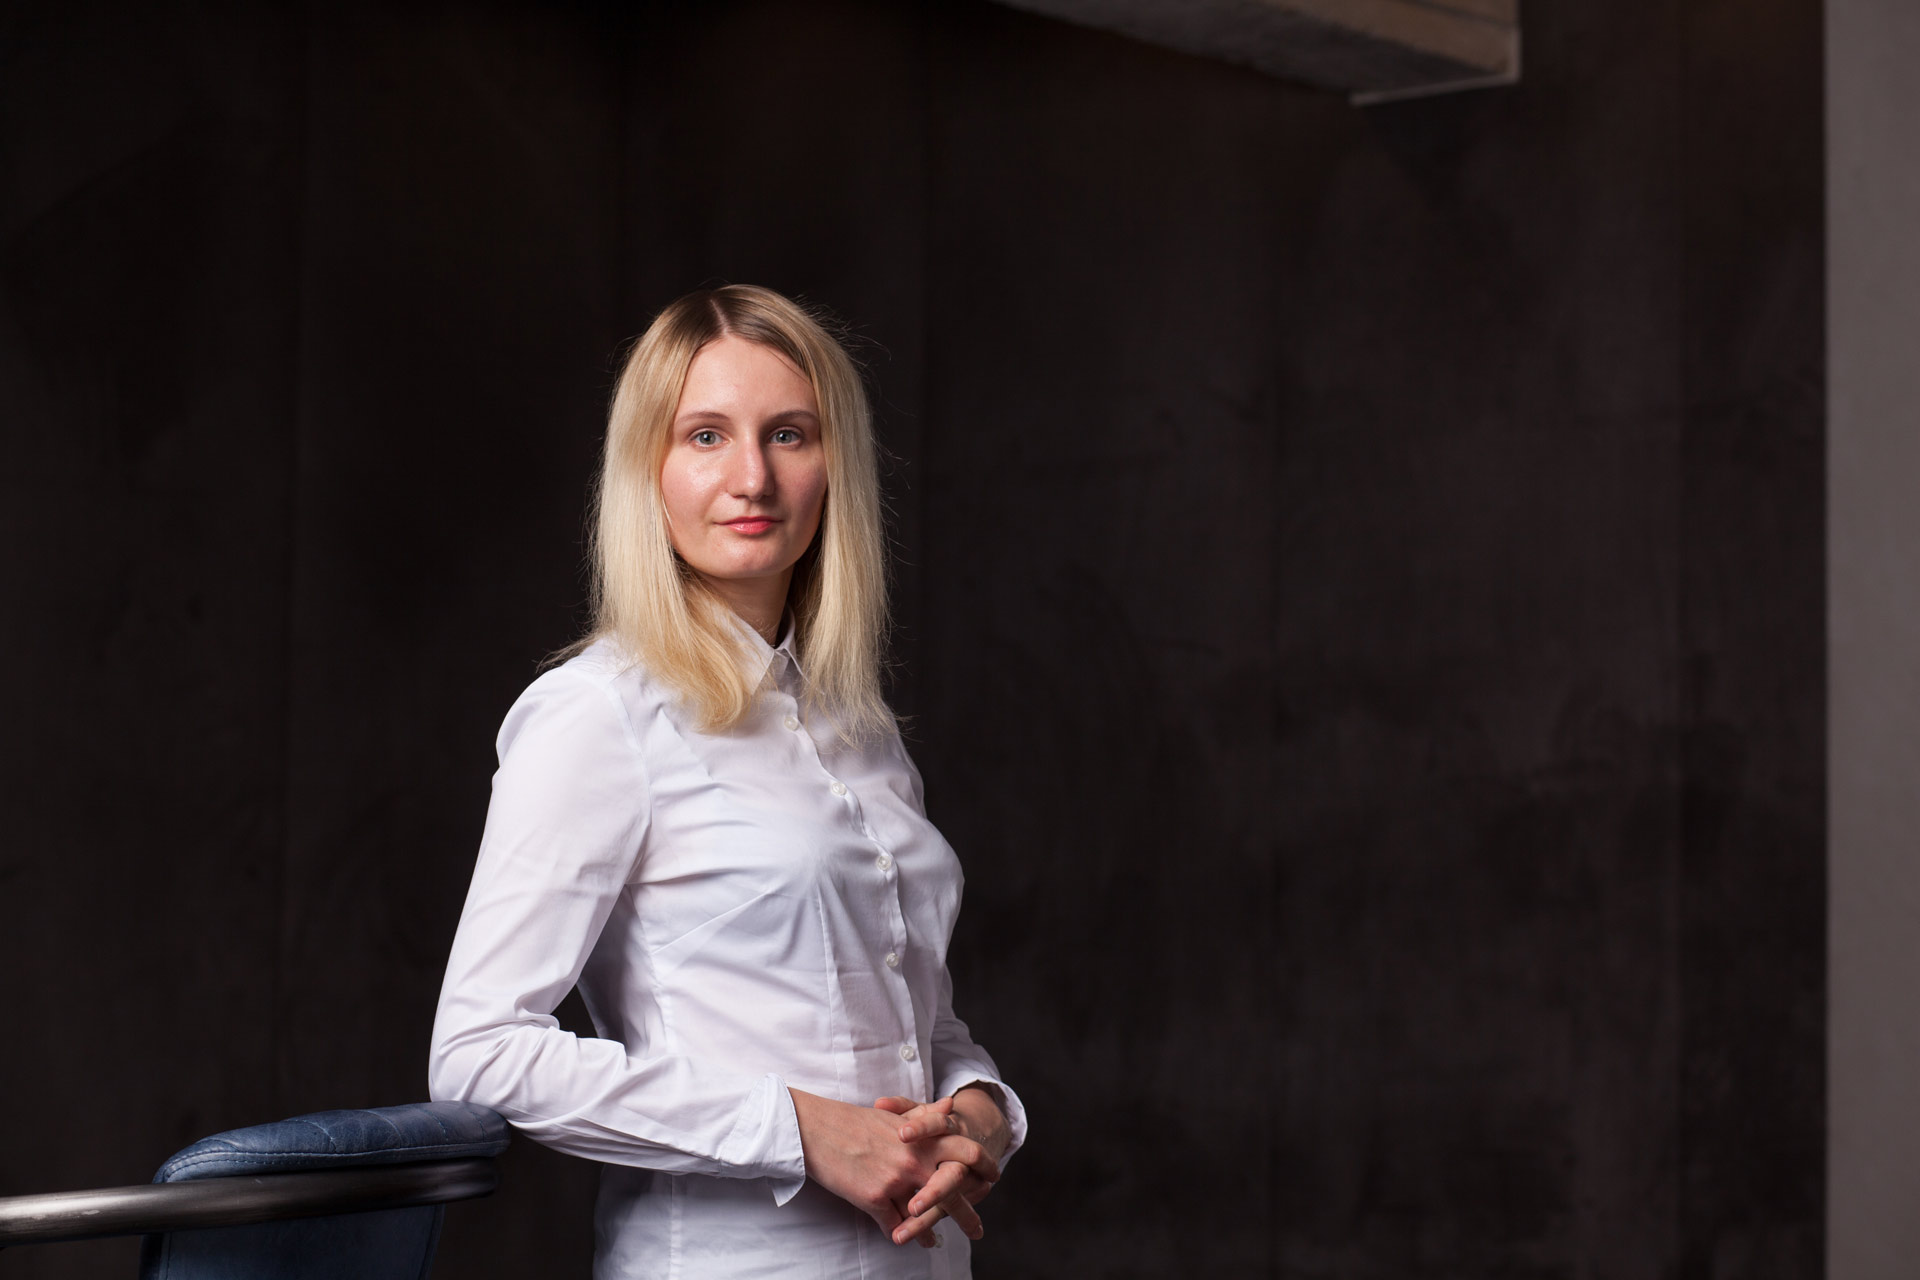 Мария Широкова – эксперт по SMM, руководитель проектов агентства Интериум